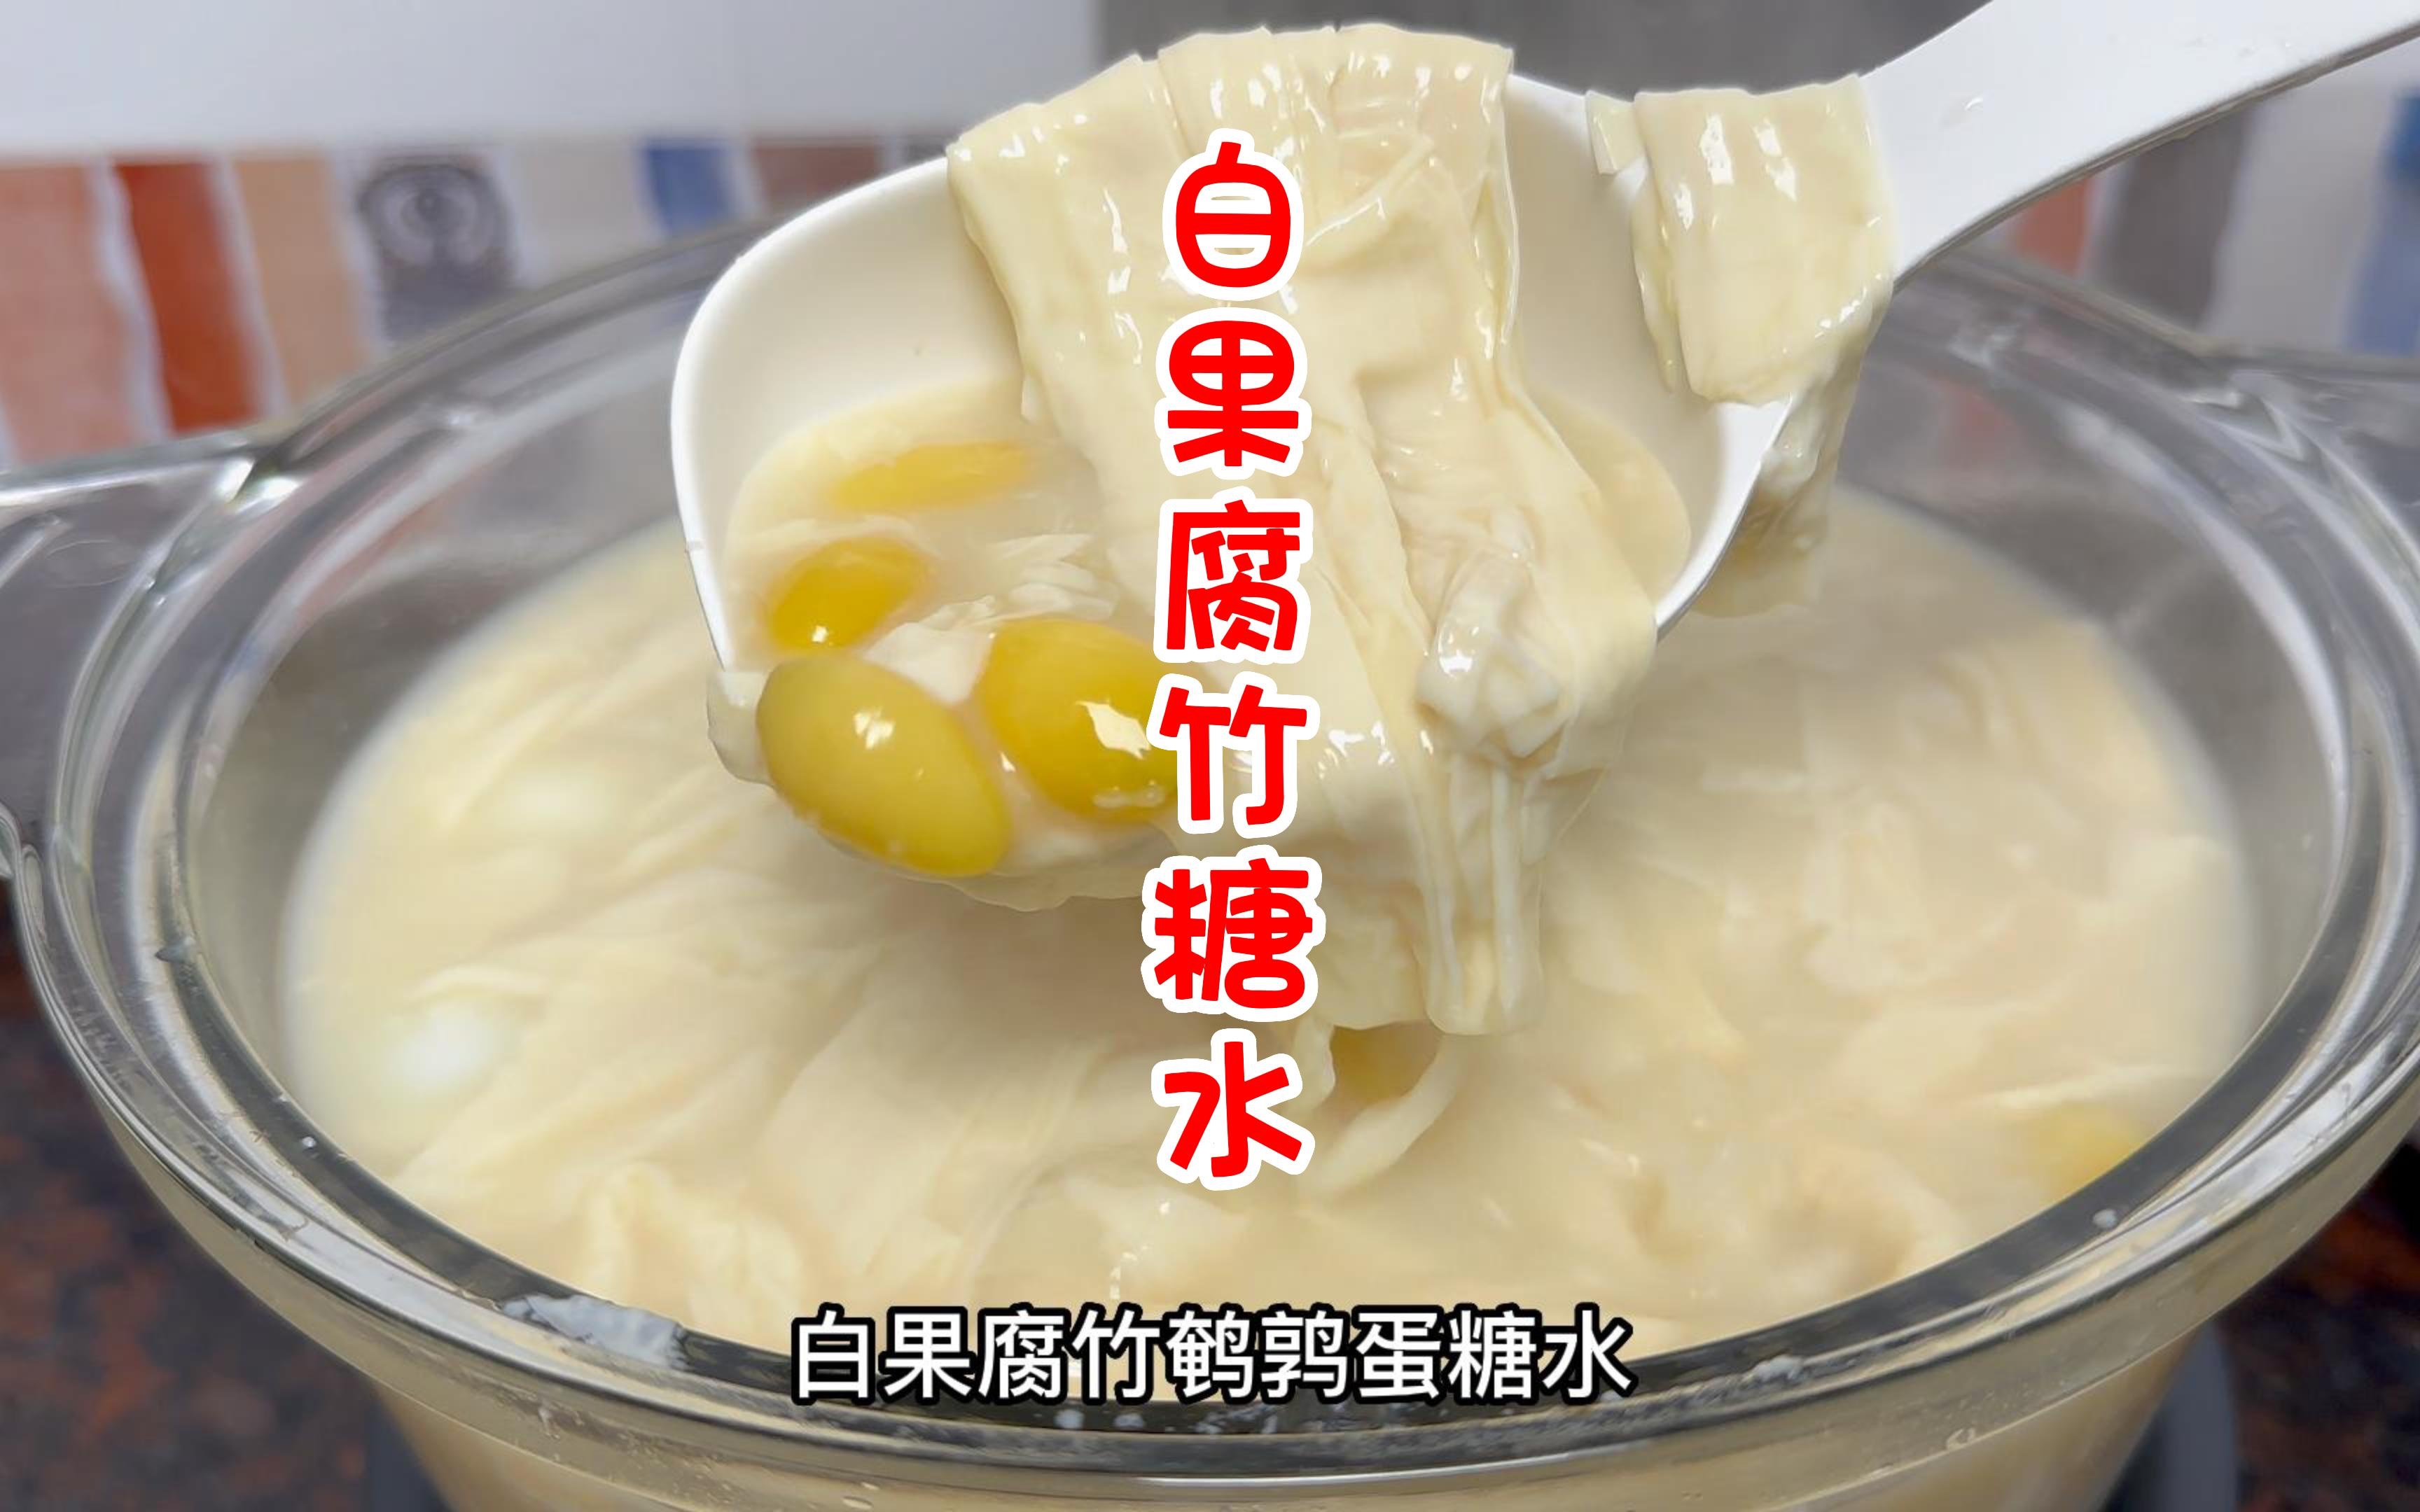 薏米腐竹糖水 凍/熱 – 綠林甜品